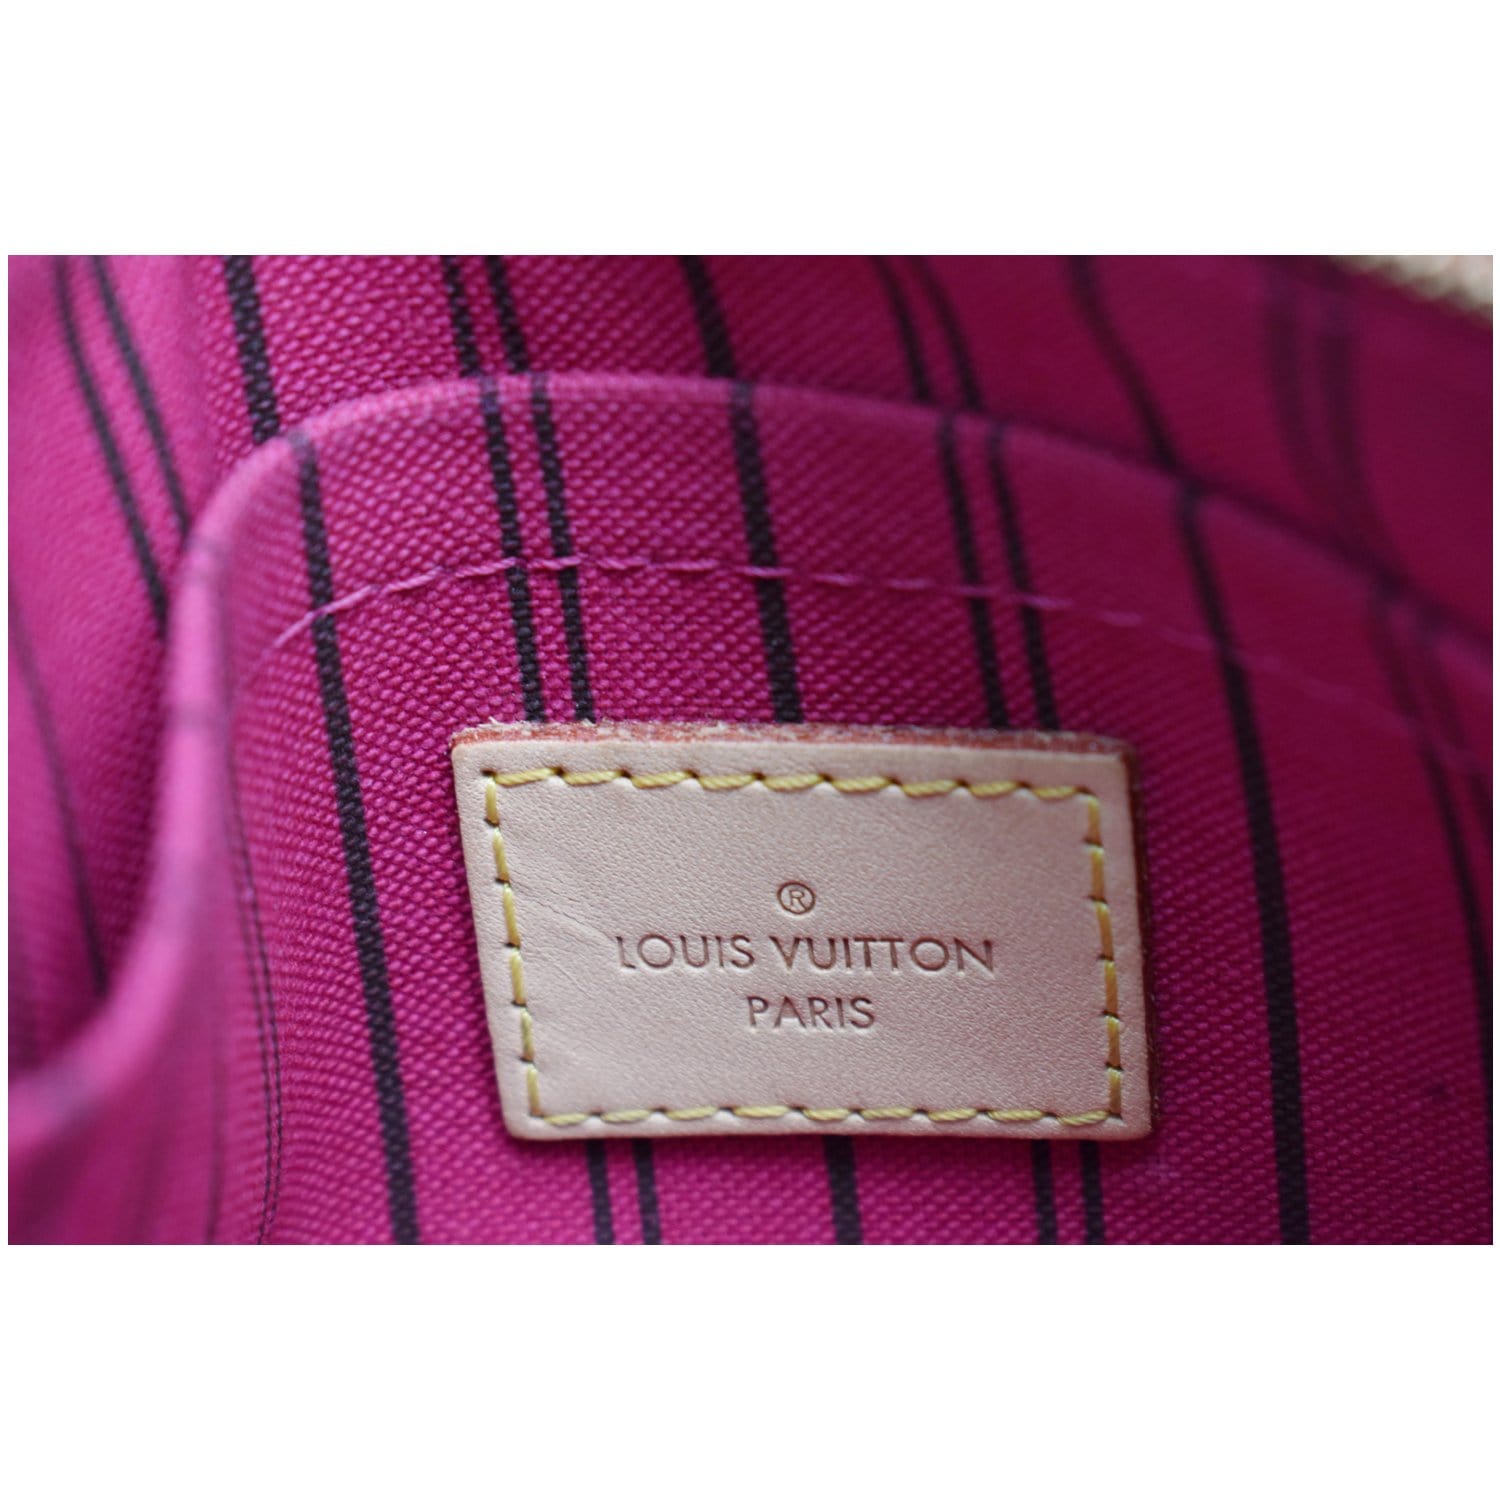 Authentic Louis Vuitton Monogram Canvas Neverfull MM GM POCHETTE / POUCH